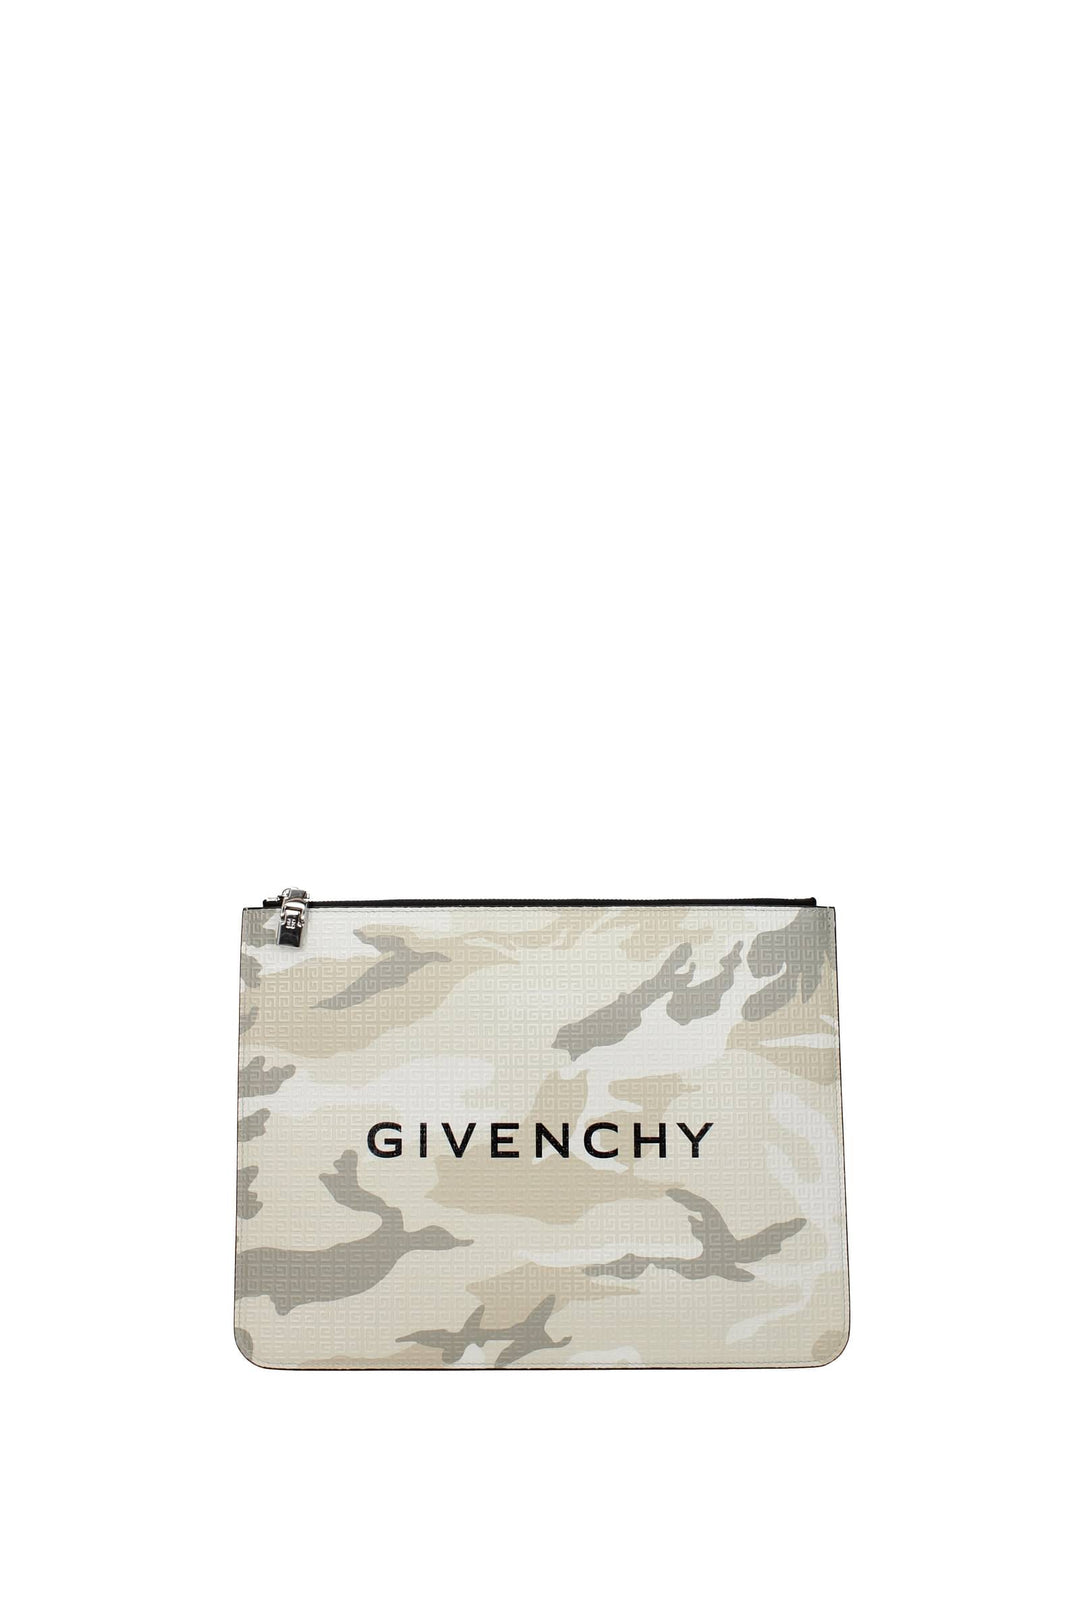 Pochette Pelle Beige Verde Militare - Givenchy - Uomo